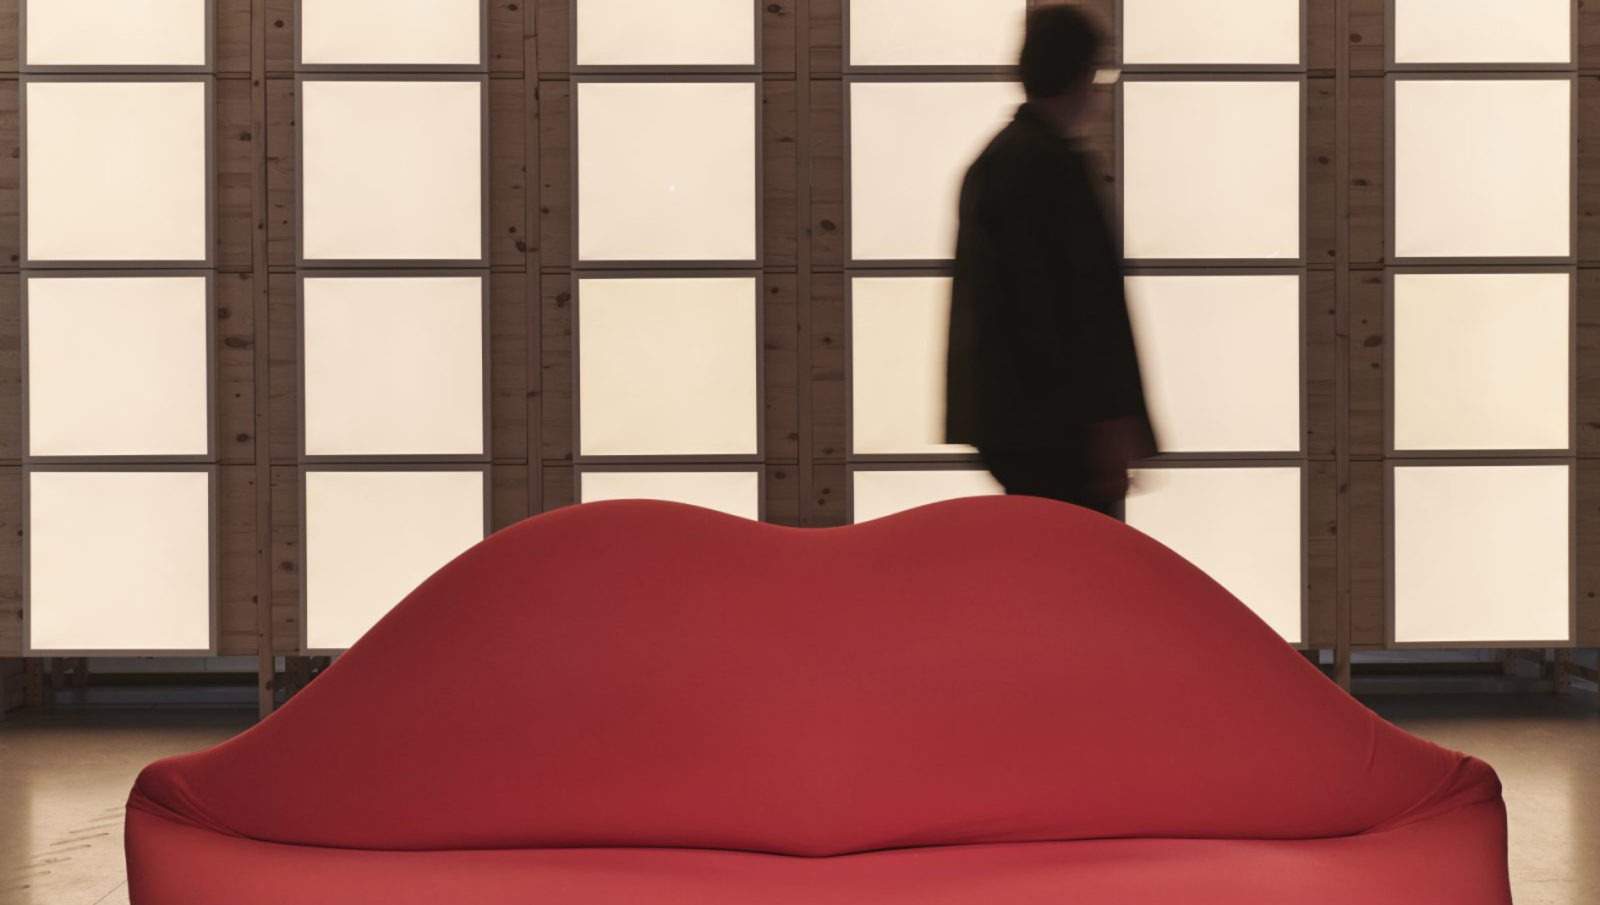 Ein rotes Bocca-Sofa in Form eines Mundes steht vor der Silhouette einer Person und einer Fensterwand.